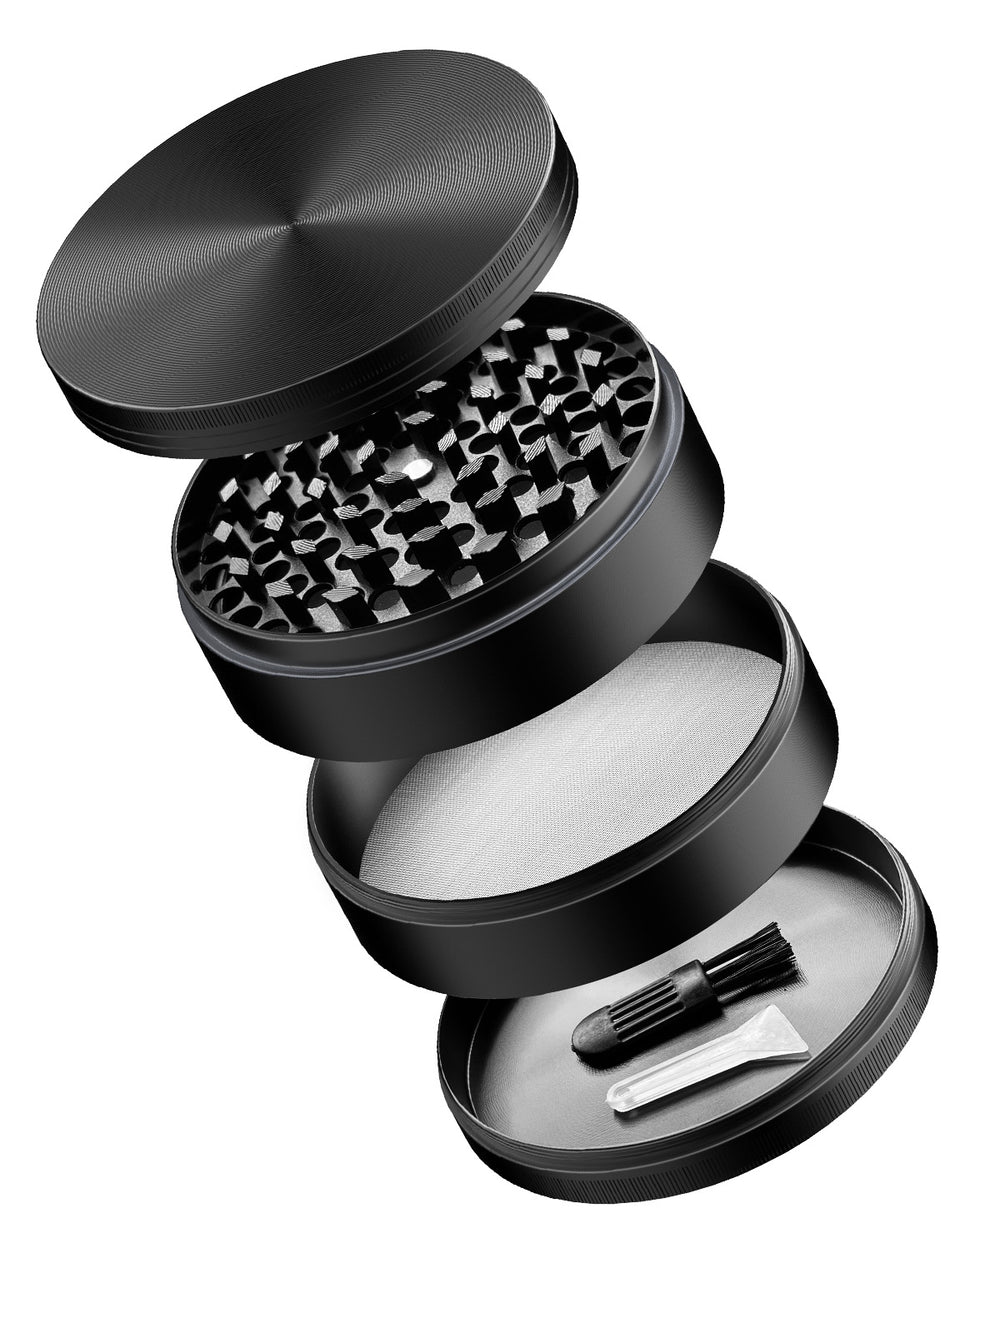 Black 4 piece grinder